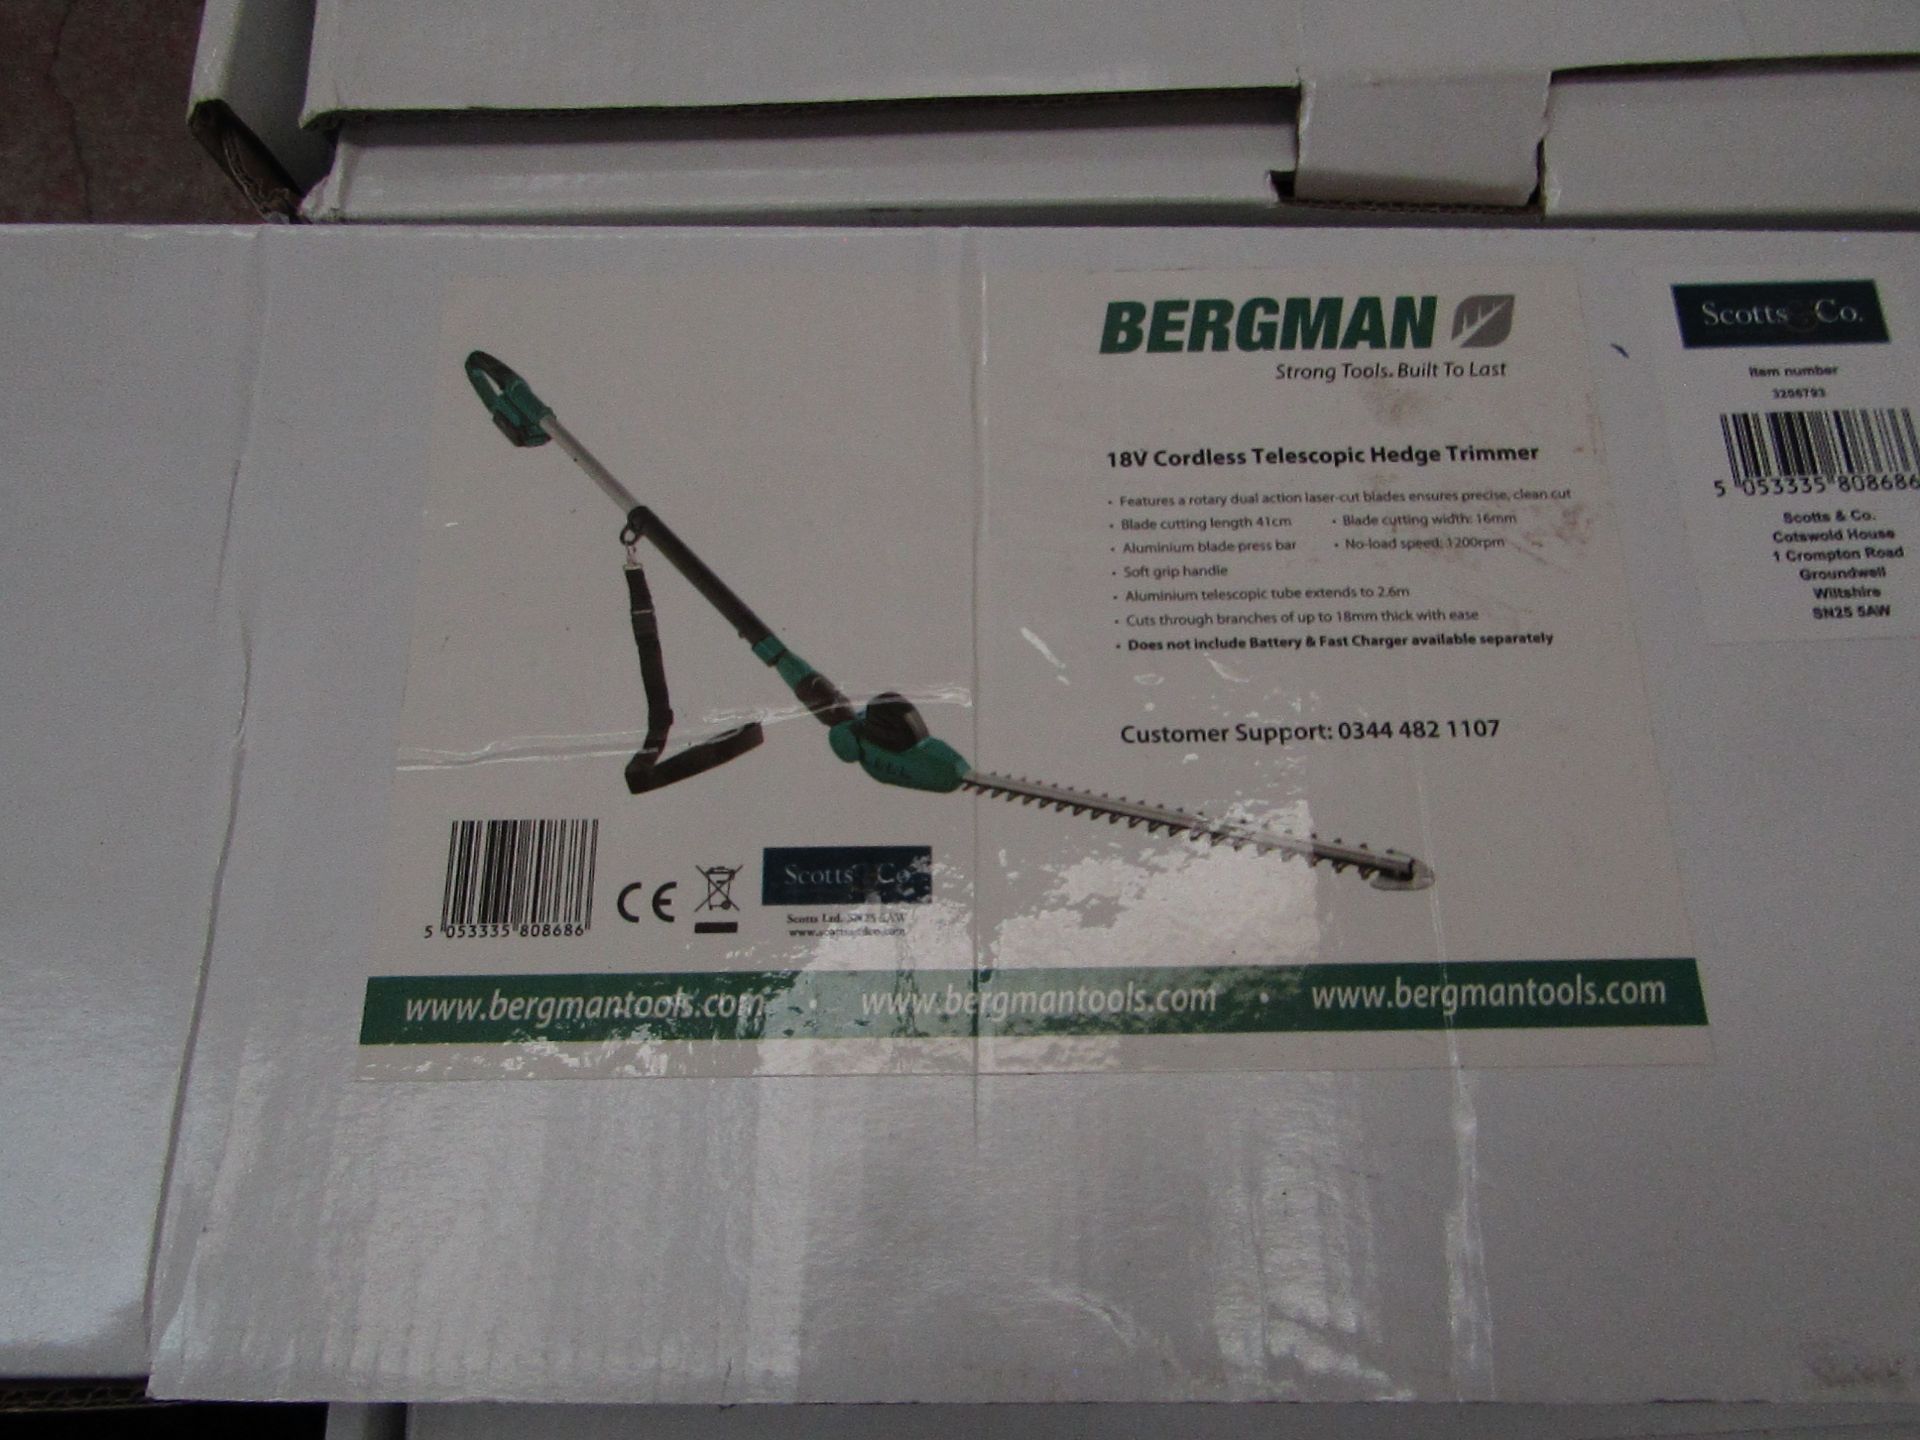 1 x Scotts of Stow Bergman® Interchange Cordless Telescopic Hedge Trimmer RRP £69.95 SKU SCO-DIR-